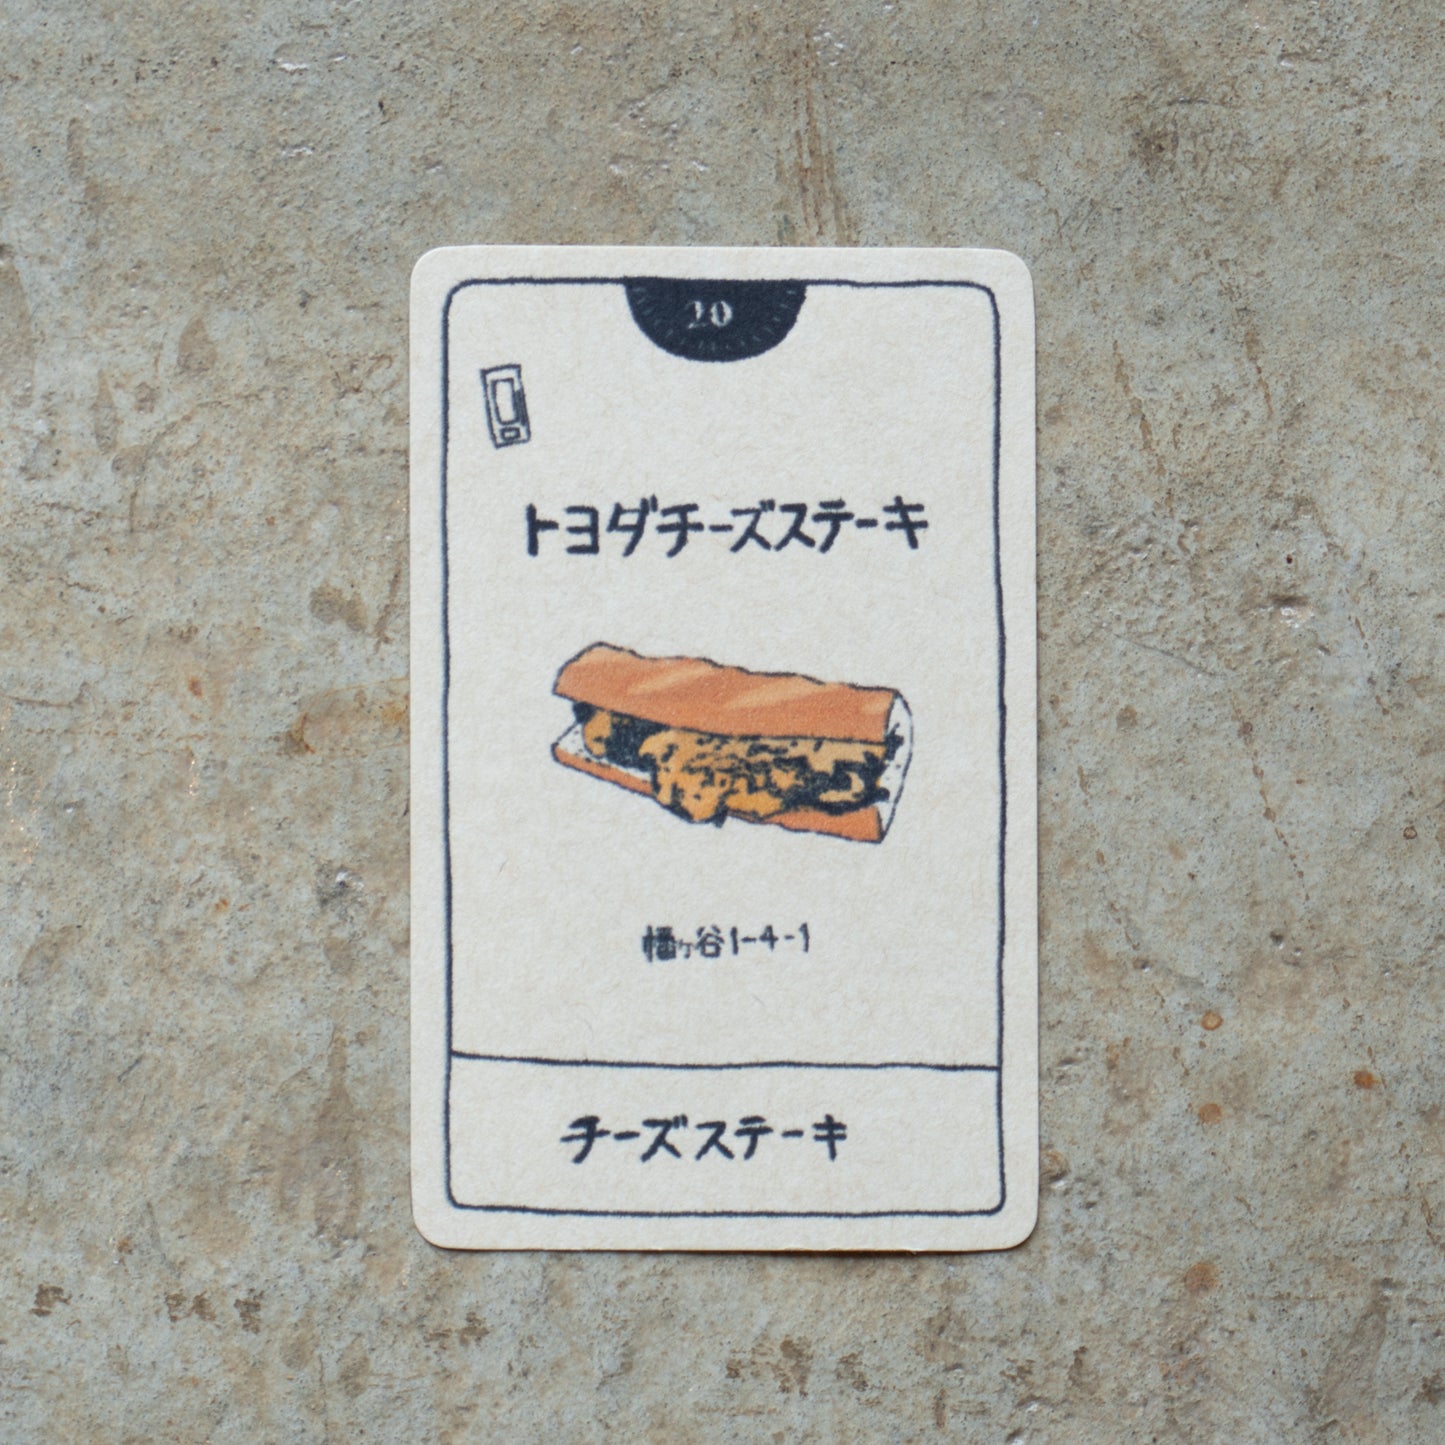 トヨダチーズステーキ チーズステーキ | KITASHIBU FOOD TAROT 020